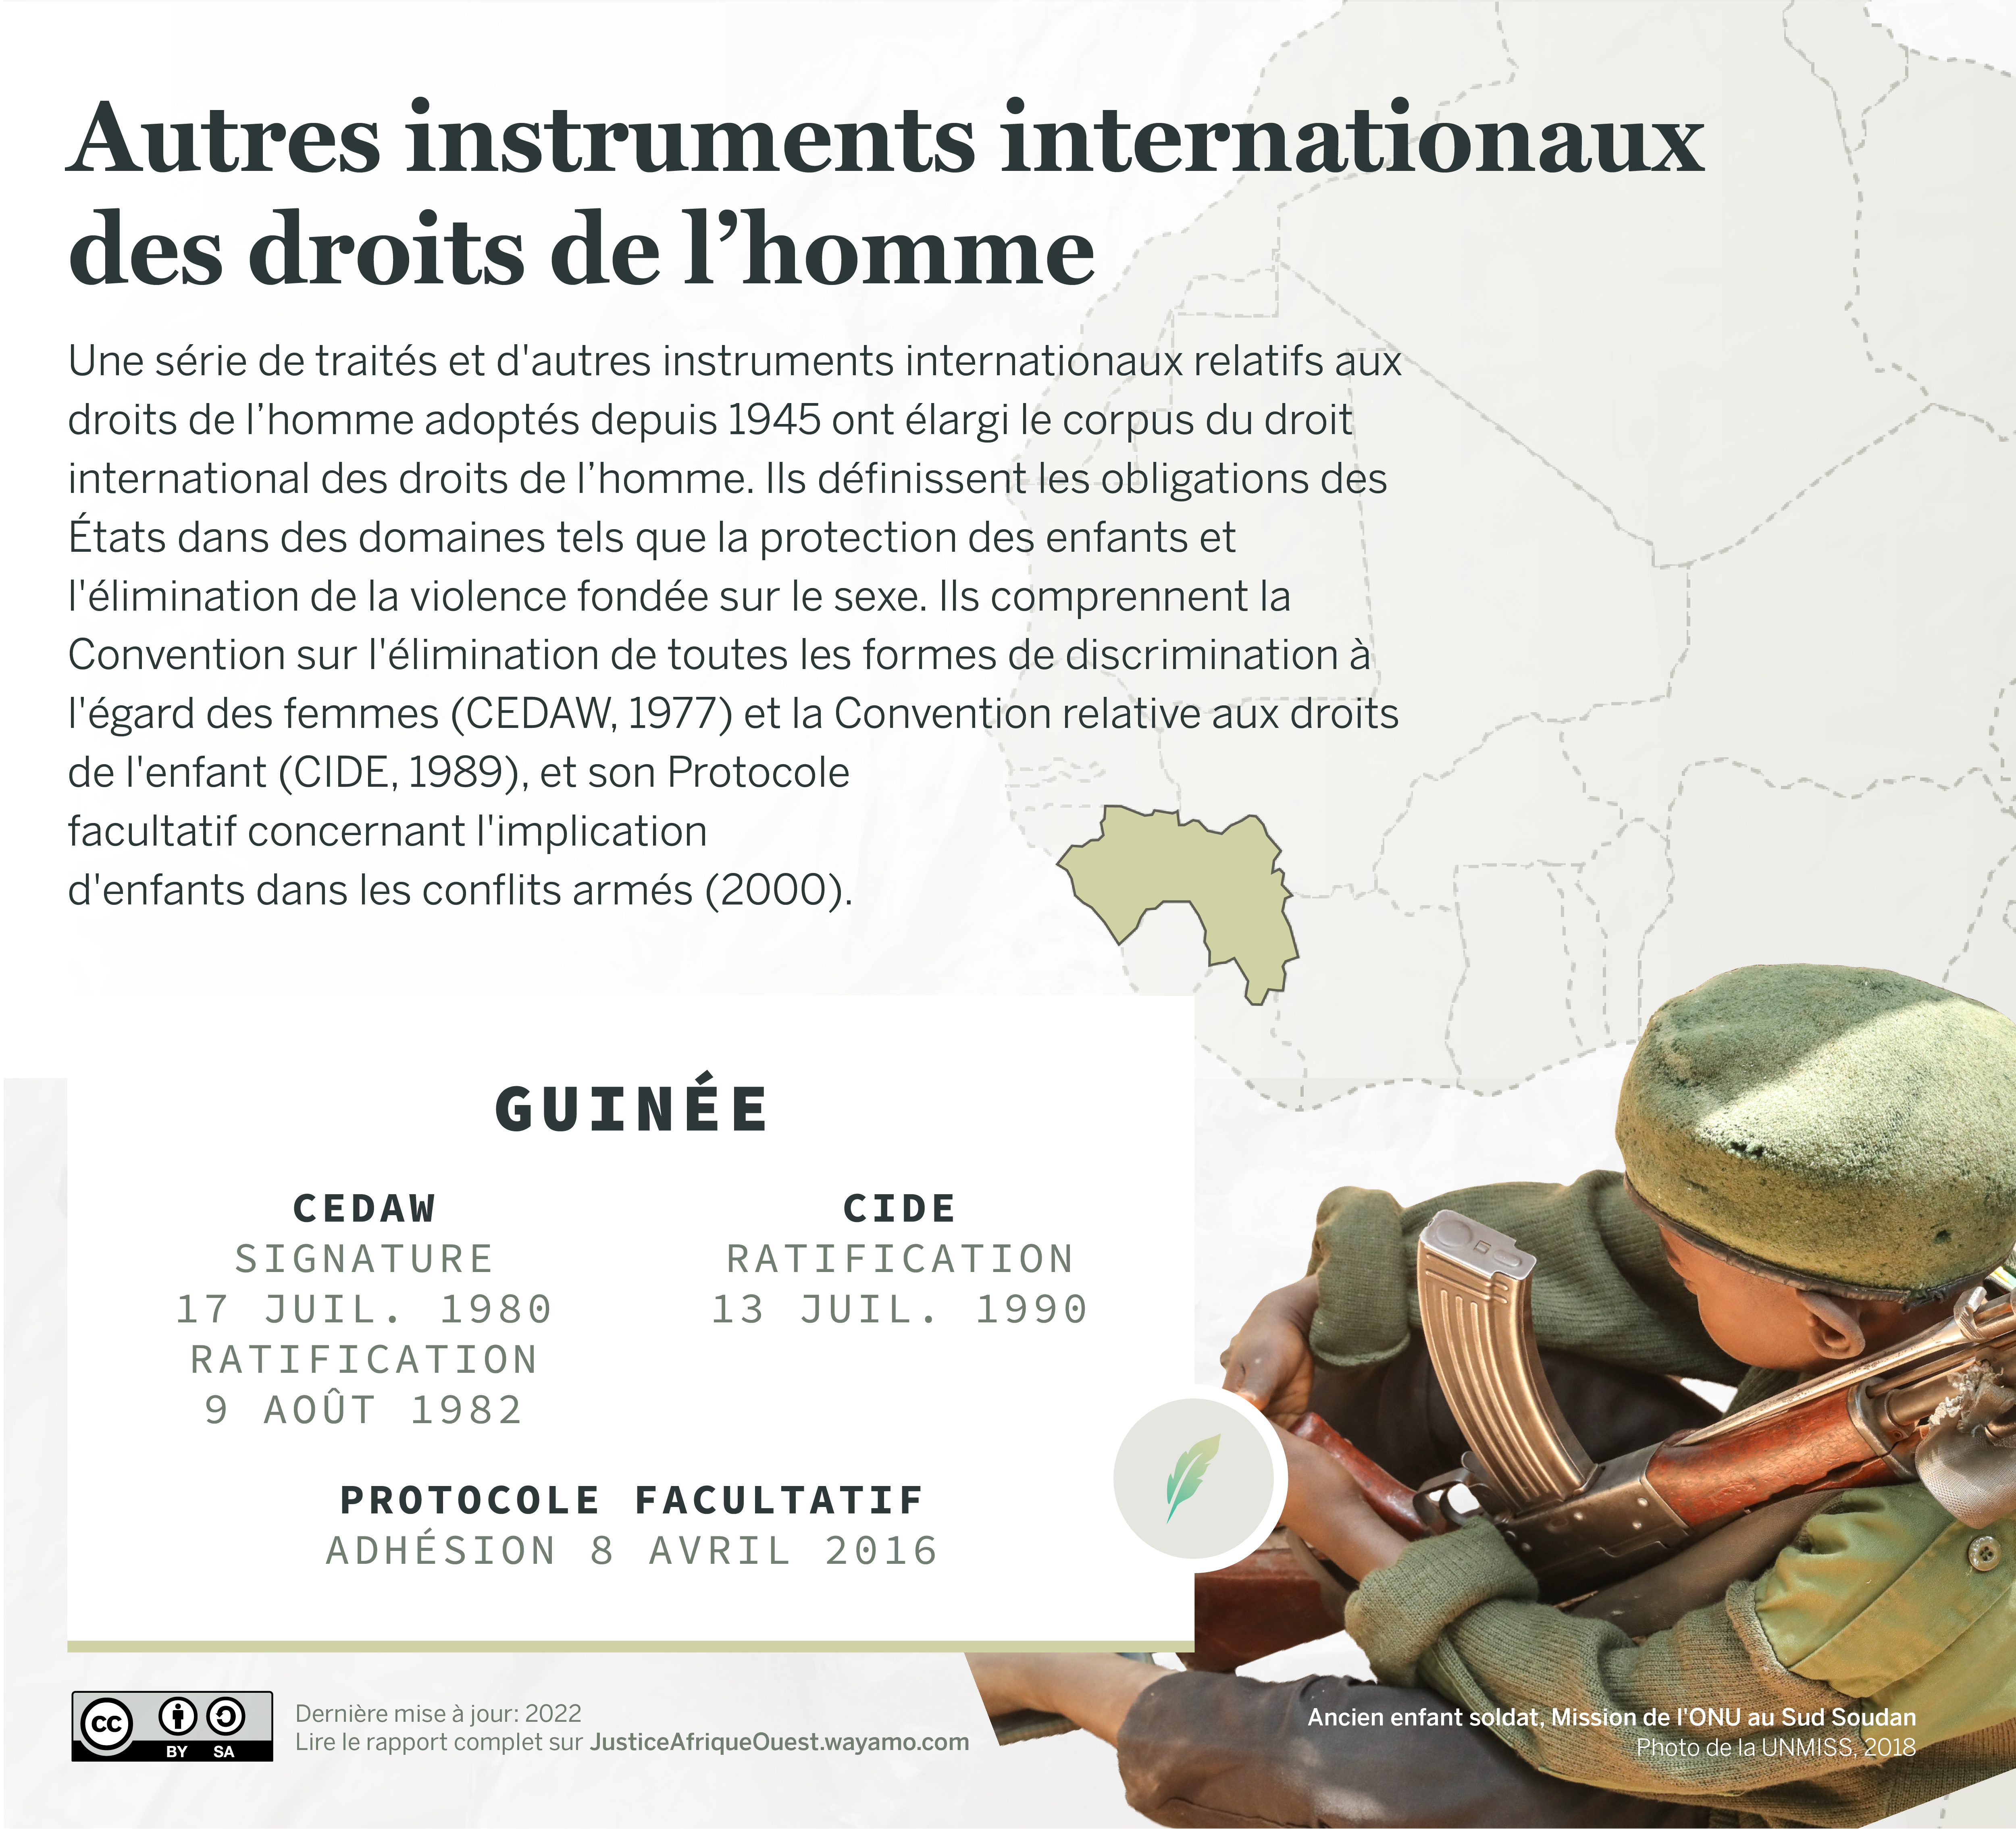 GUINEE_Droits-de-lhomme_2-Wayamo-Foundation-CC-BY-SA-4.0